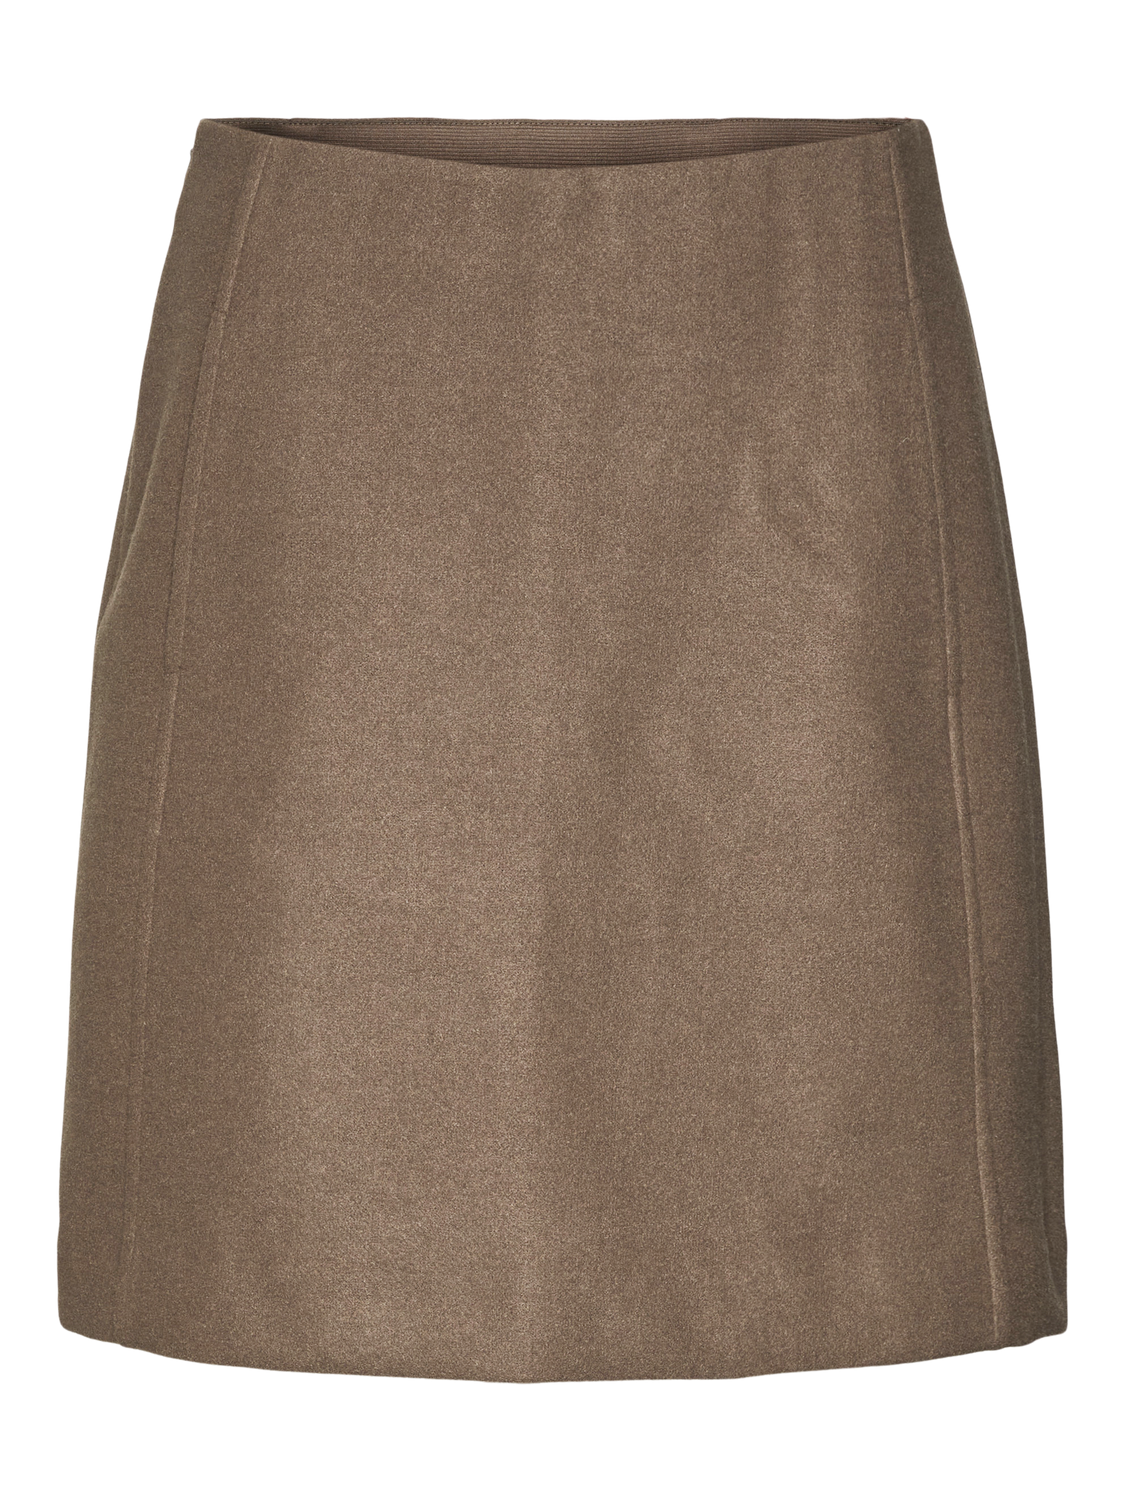 VMFORTUNEALLISON Skirt - Chocolate Chip